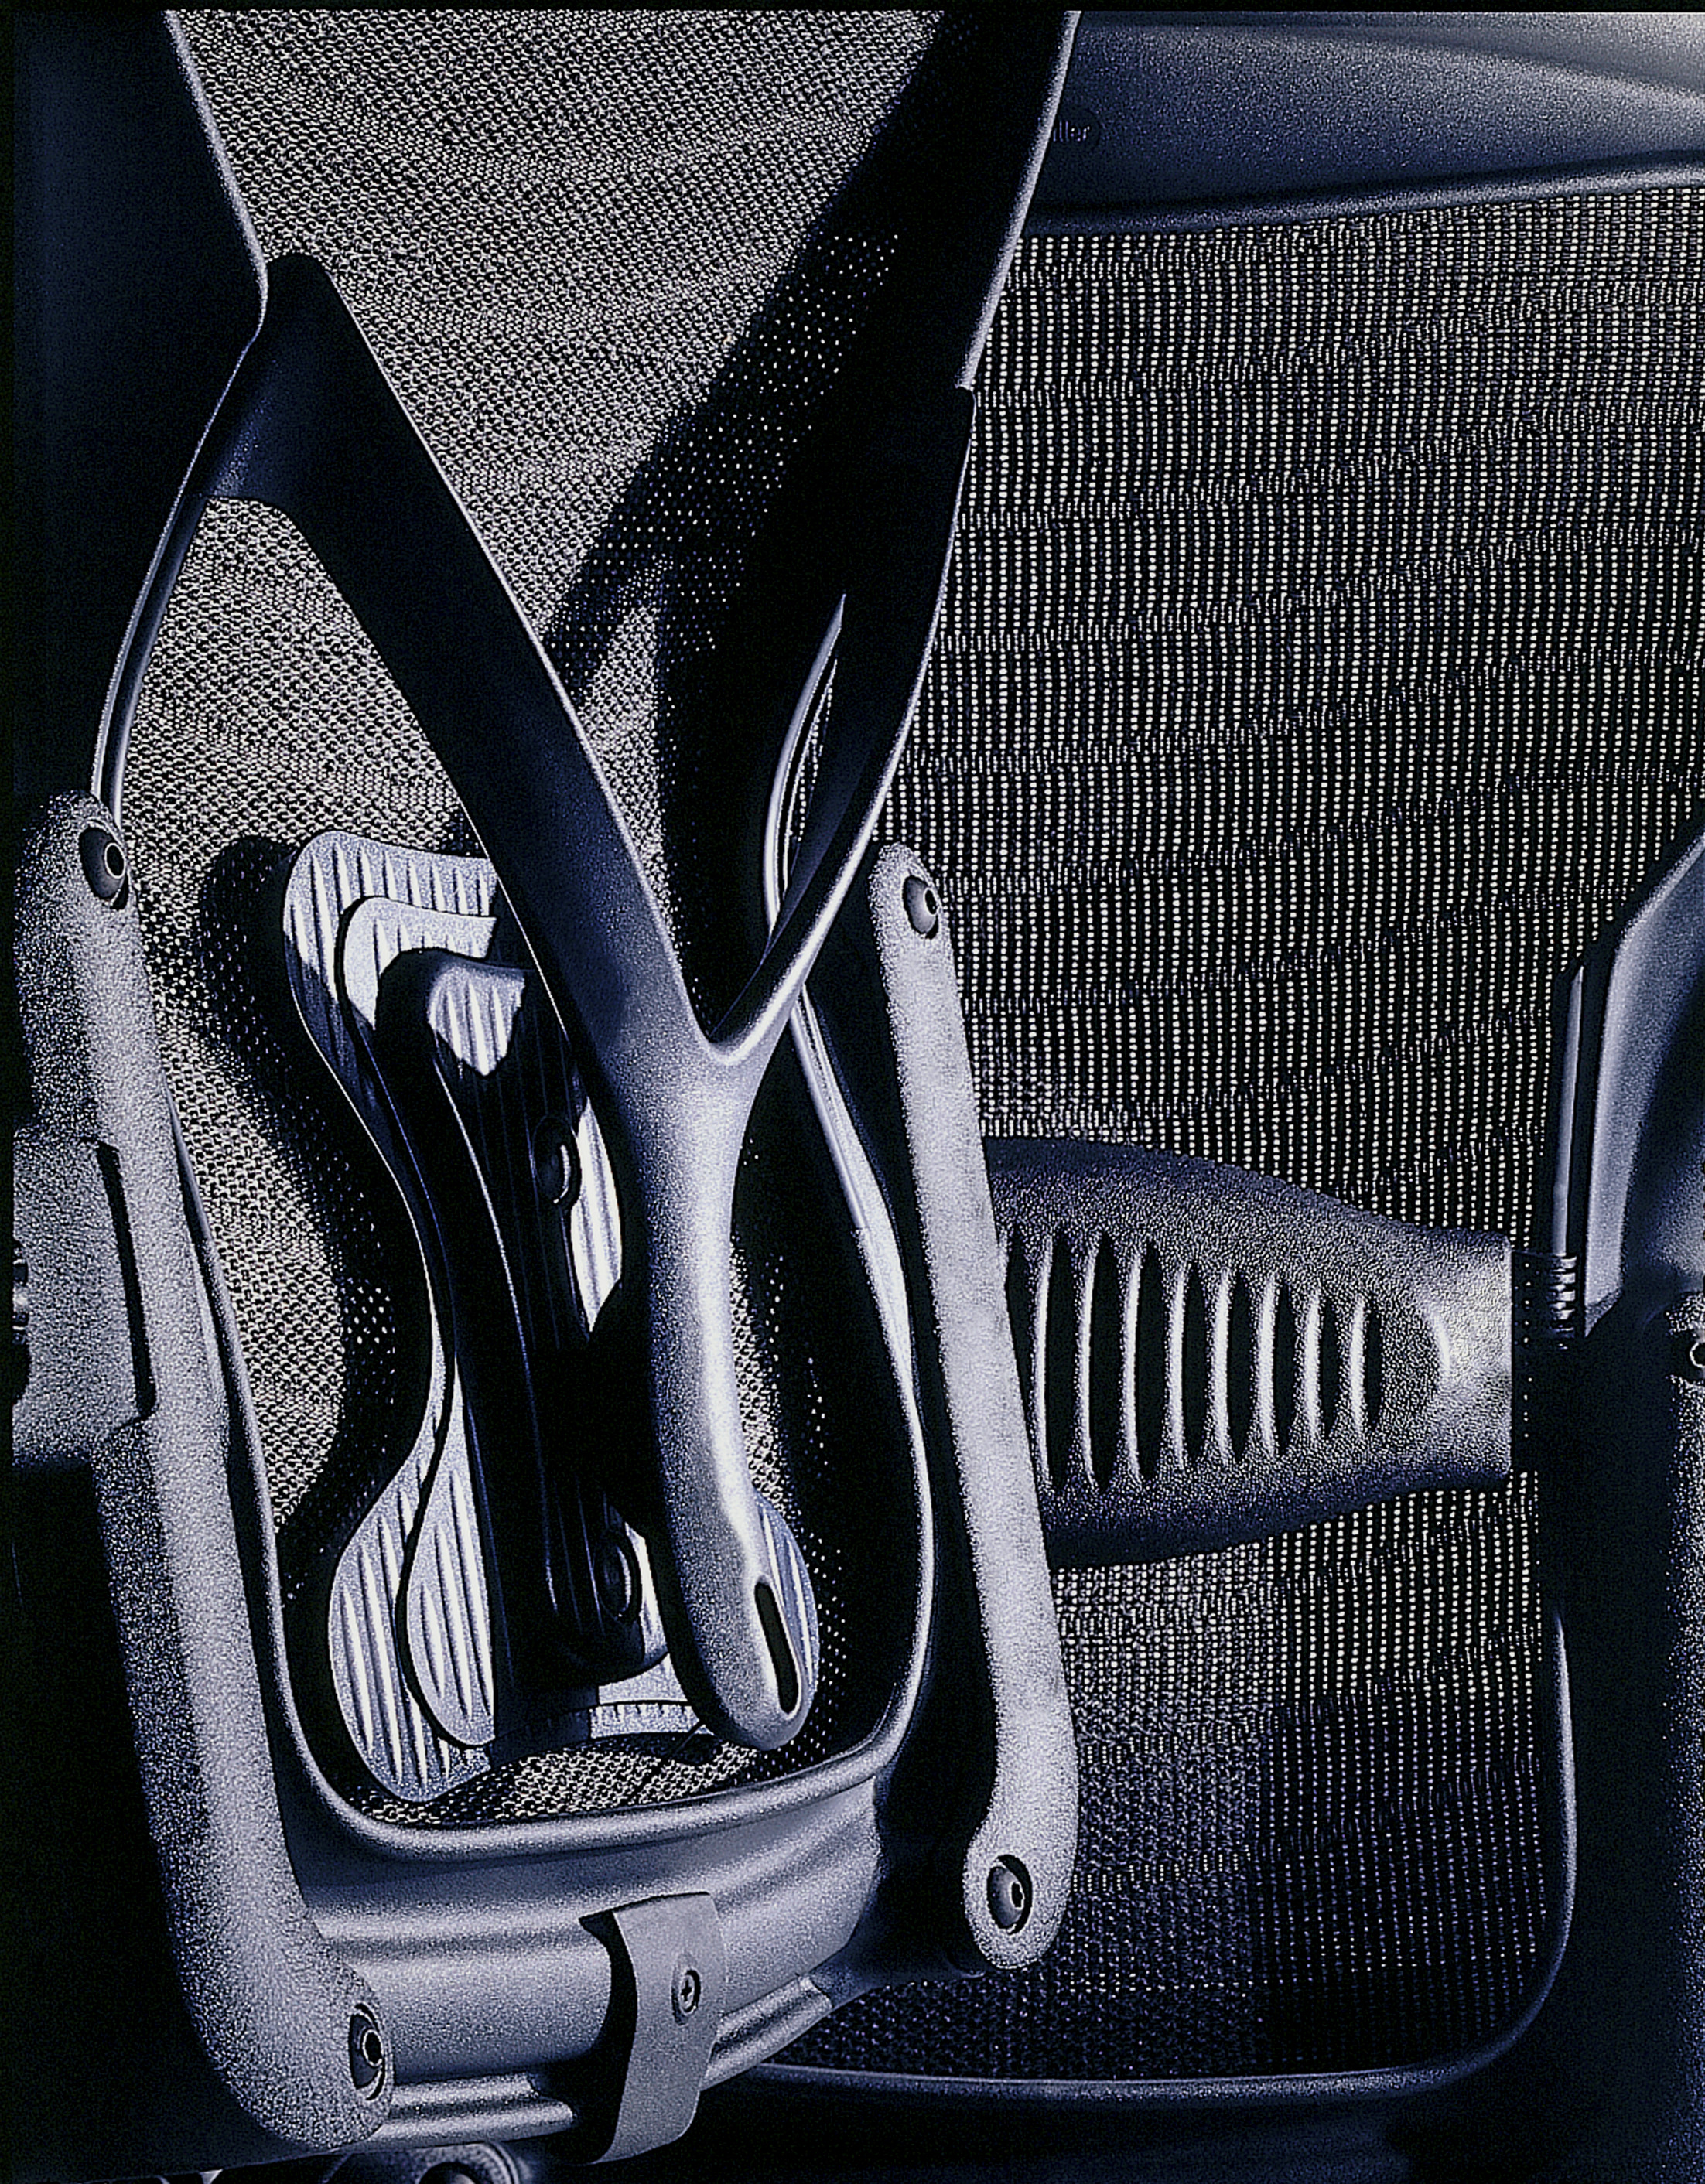 Aeron Chair by Herman Miller || Suporte & Inovação Interiores, representante Atec Original Design - Maior Dealer Herman Miller da América Latina | Florianópolis